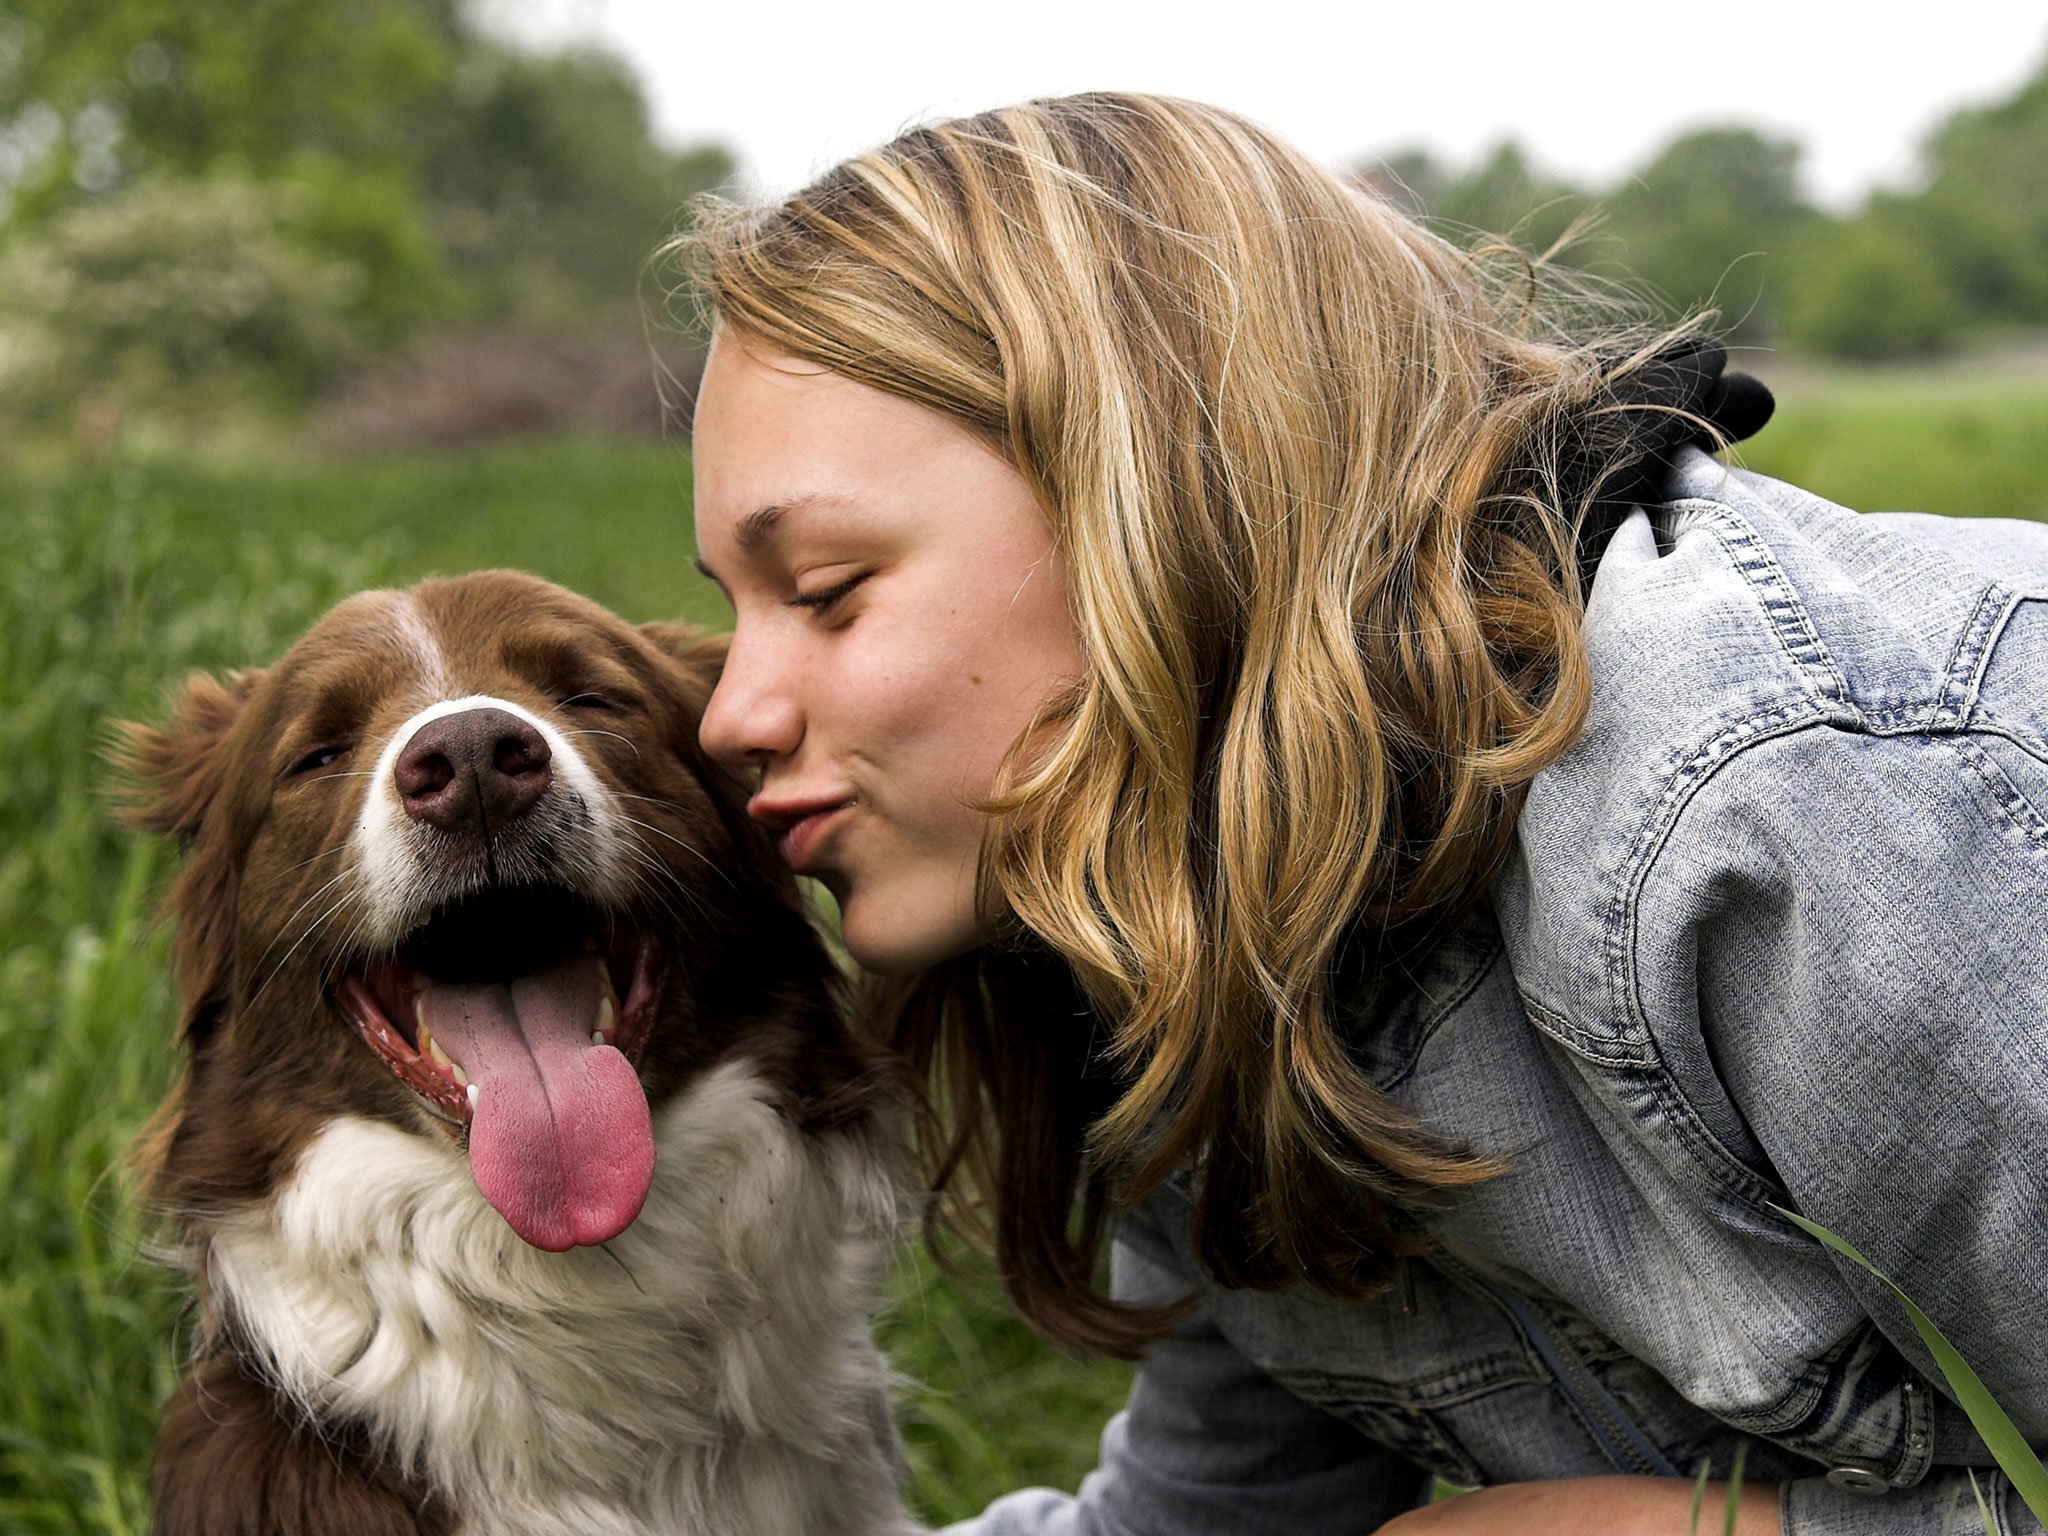 Compartilhar a vida com cães é maravilhoso, mas exige cuidados, responsabilidades e adaptação no estilo de vida.